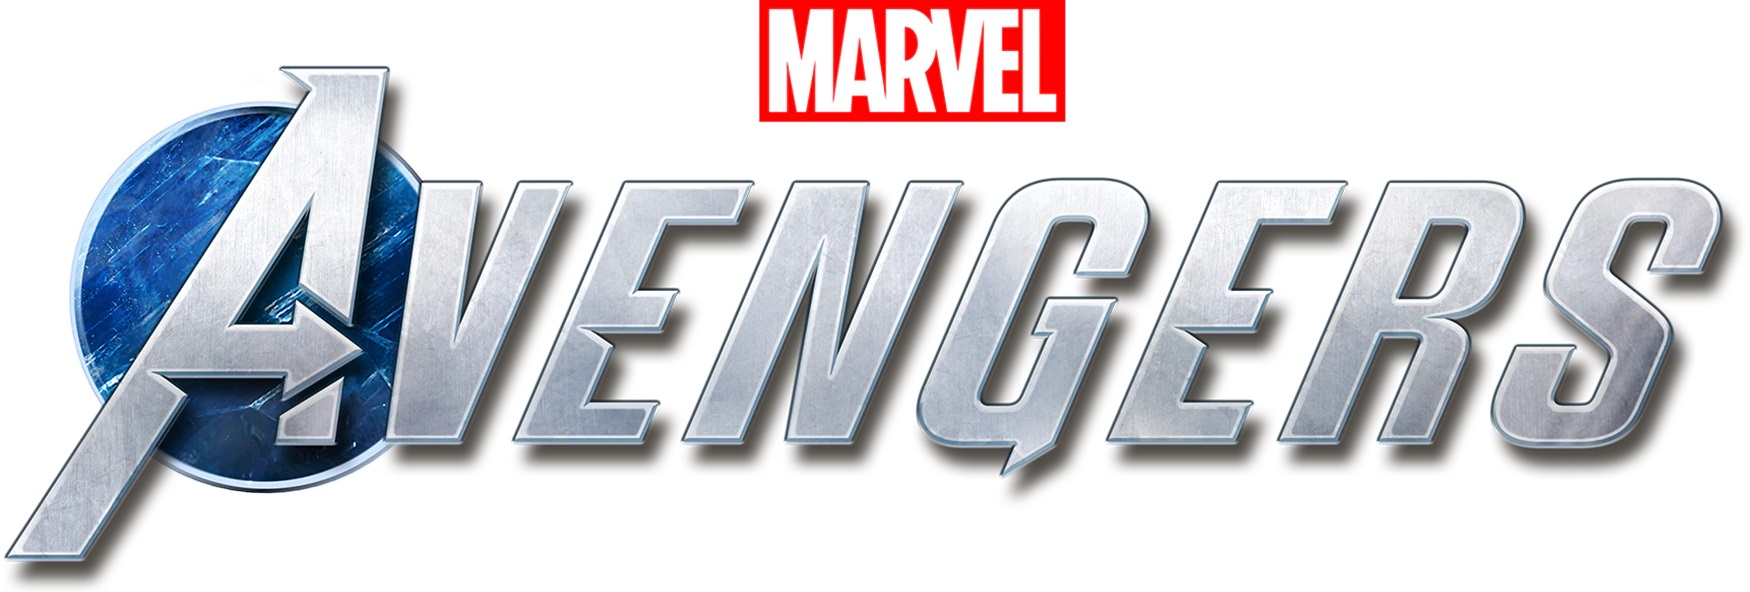 text logo marvel avengers